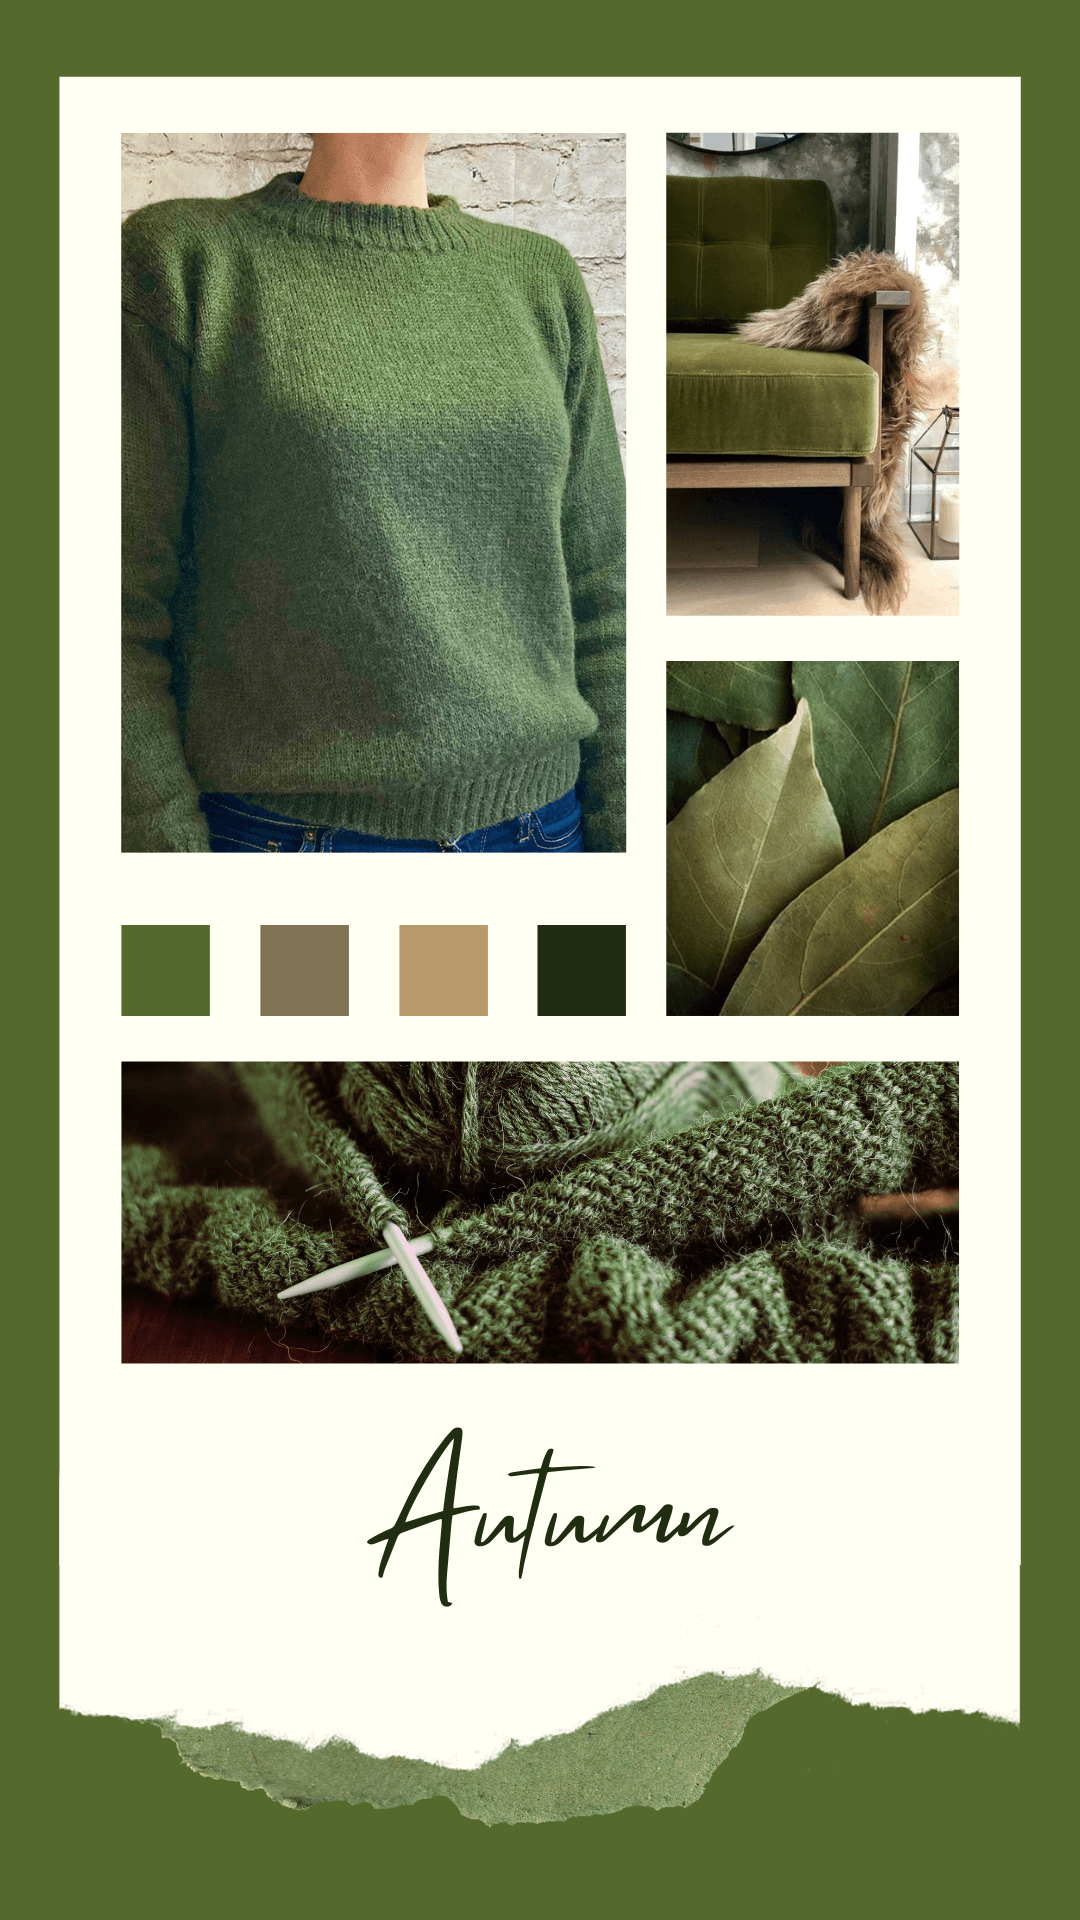 Modèle tricot pull allaitement automne